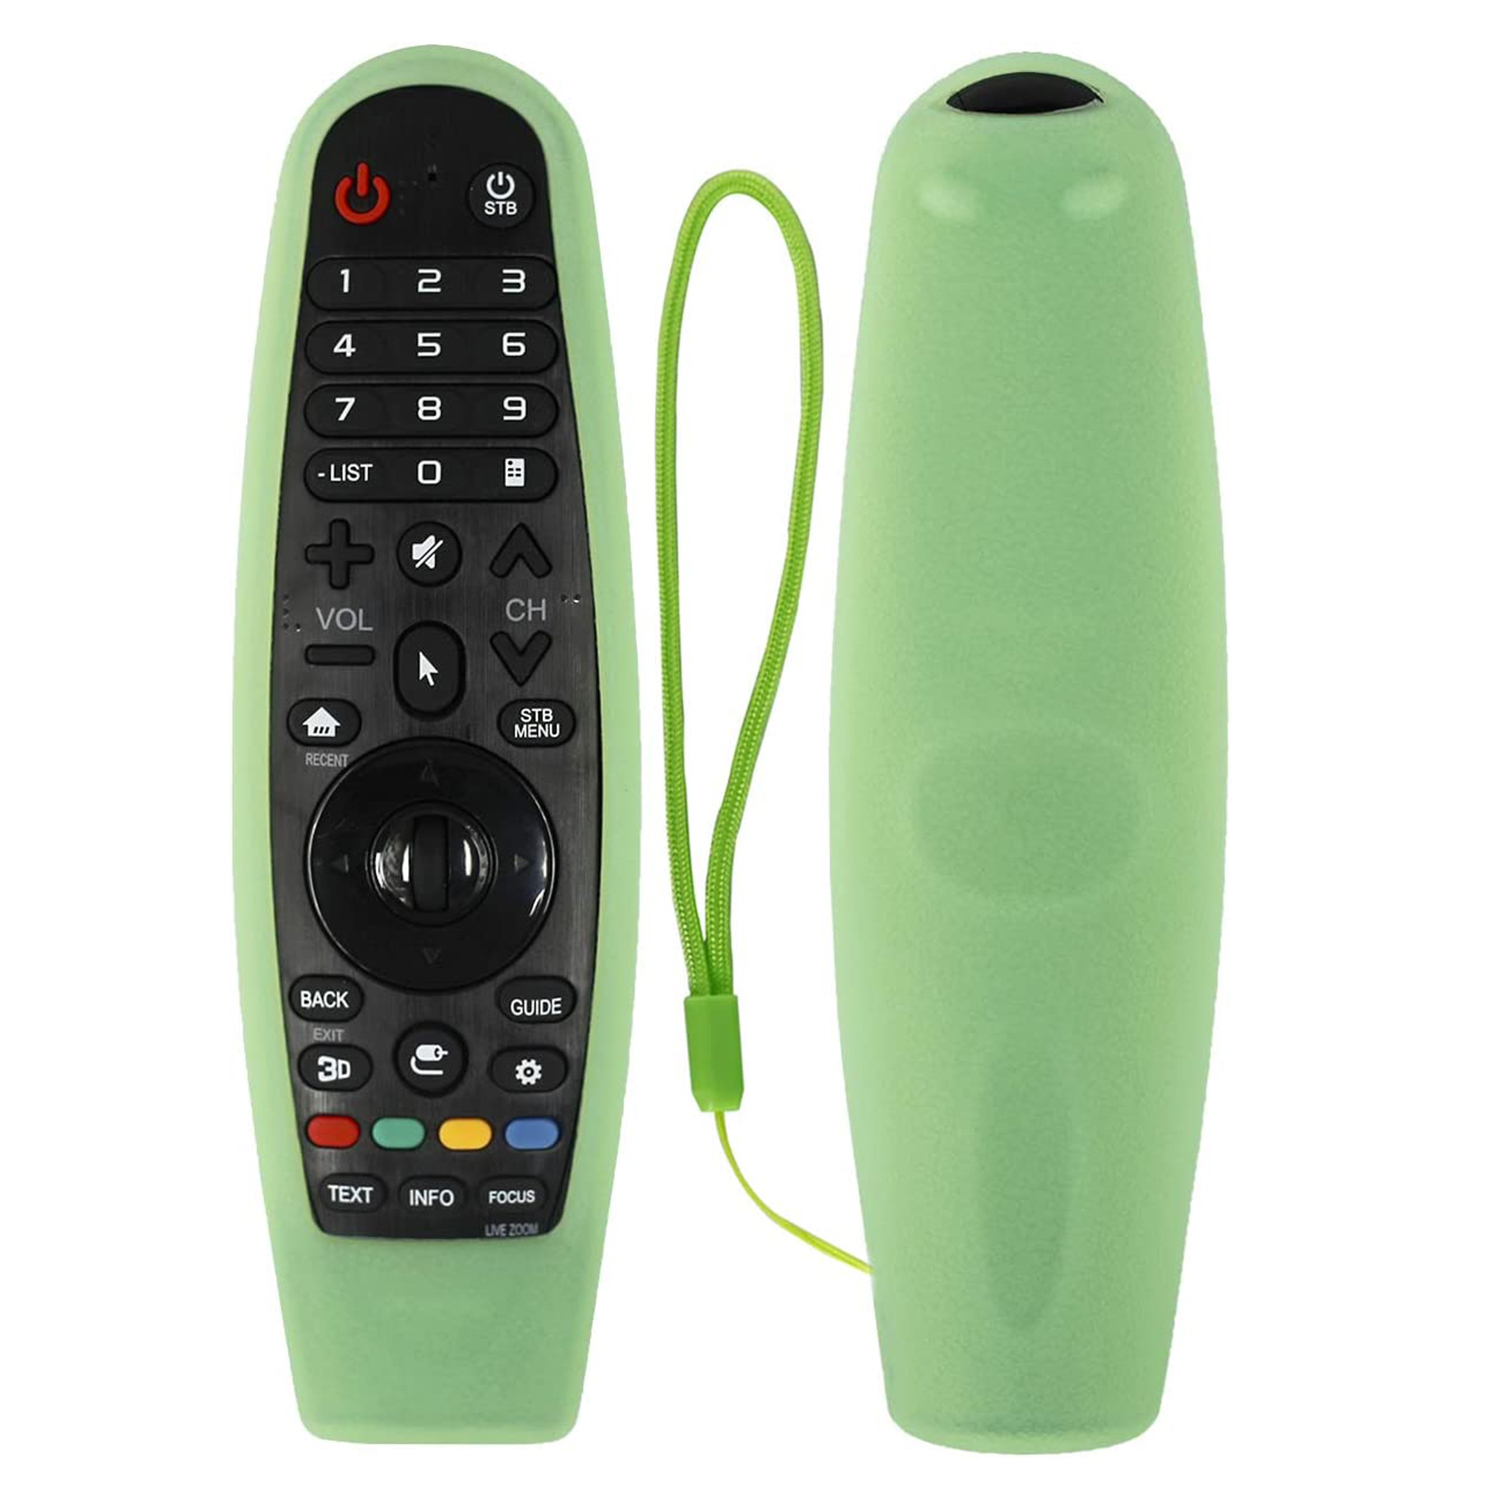 Funda protectora de silicona para mando a distancia para LG TV AKB75095307  (verde claro) Likrtyny control remoto